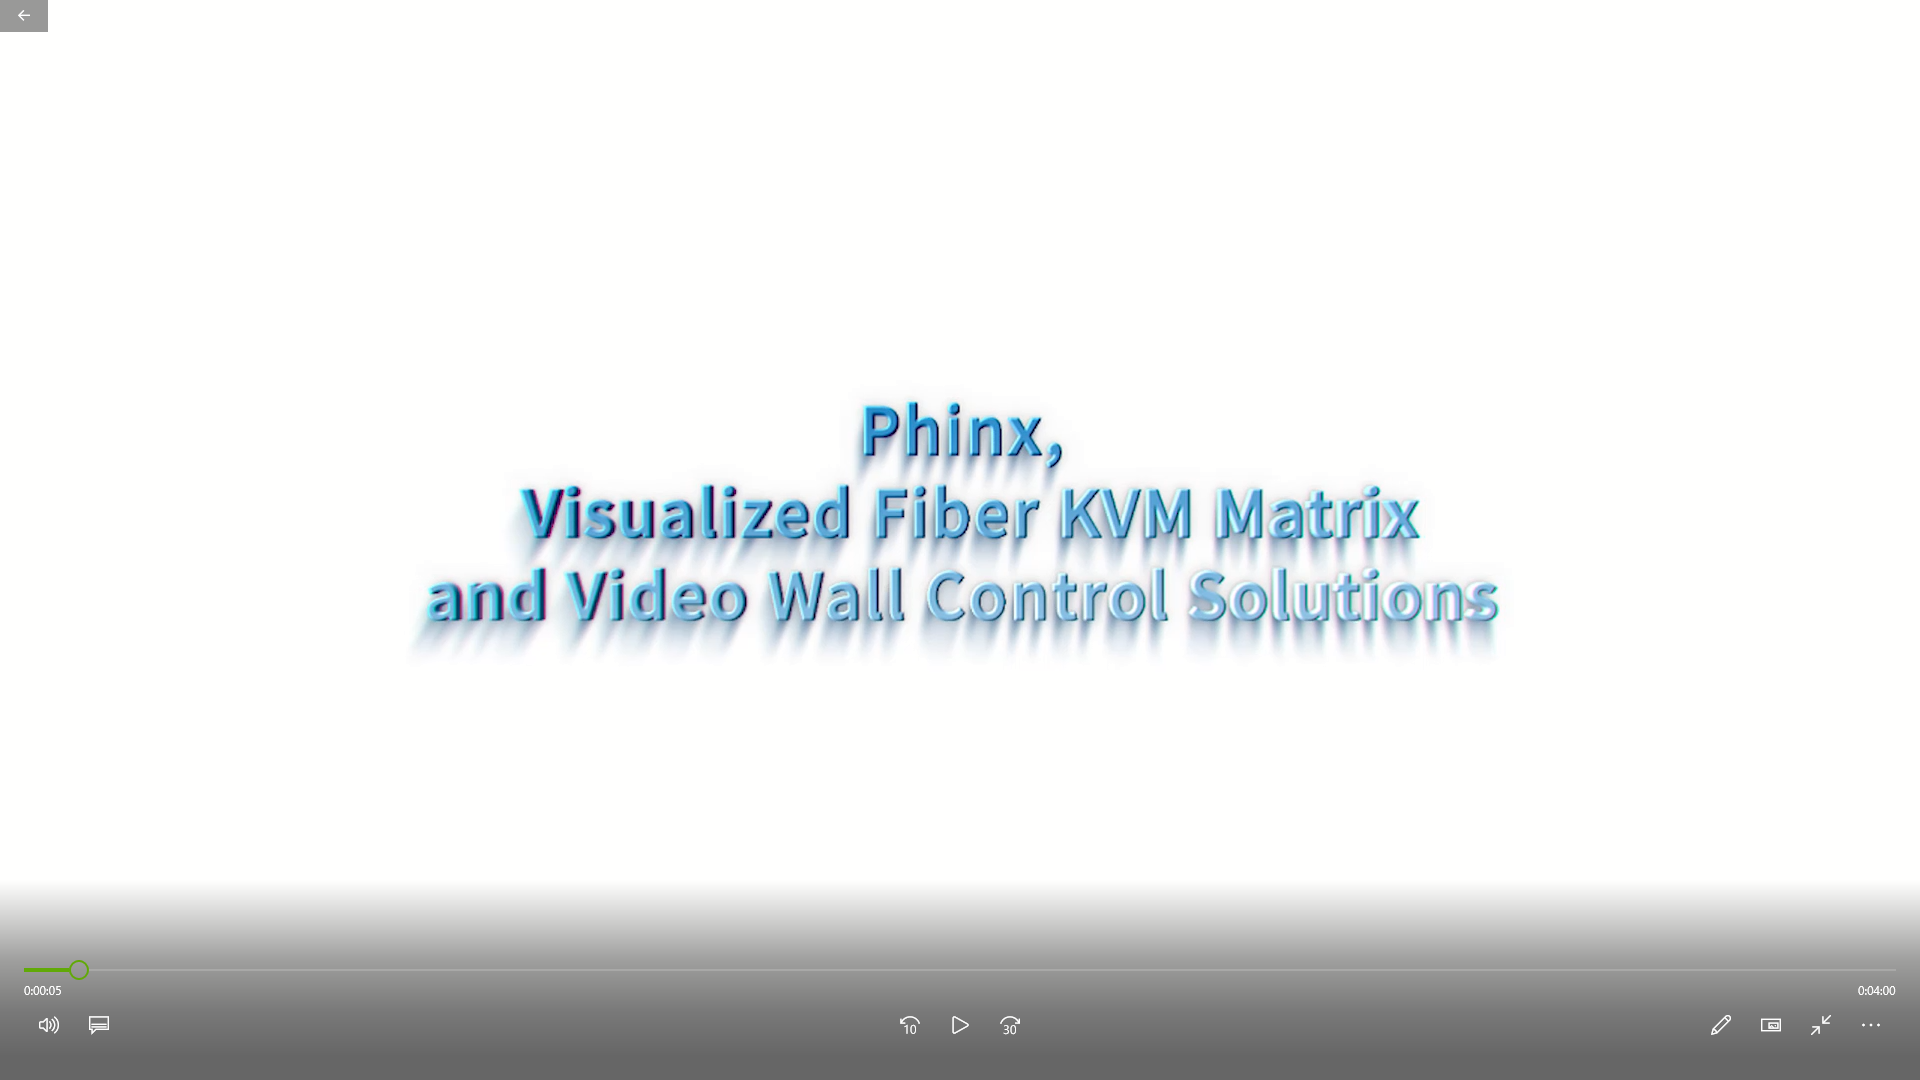 วิดีโอสาธิตเกี่ยวกับ Phinx Fiber KVM Matrix